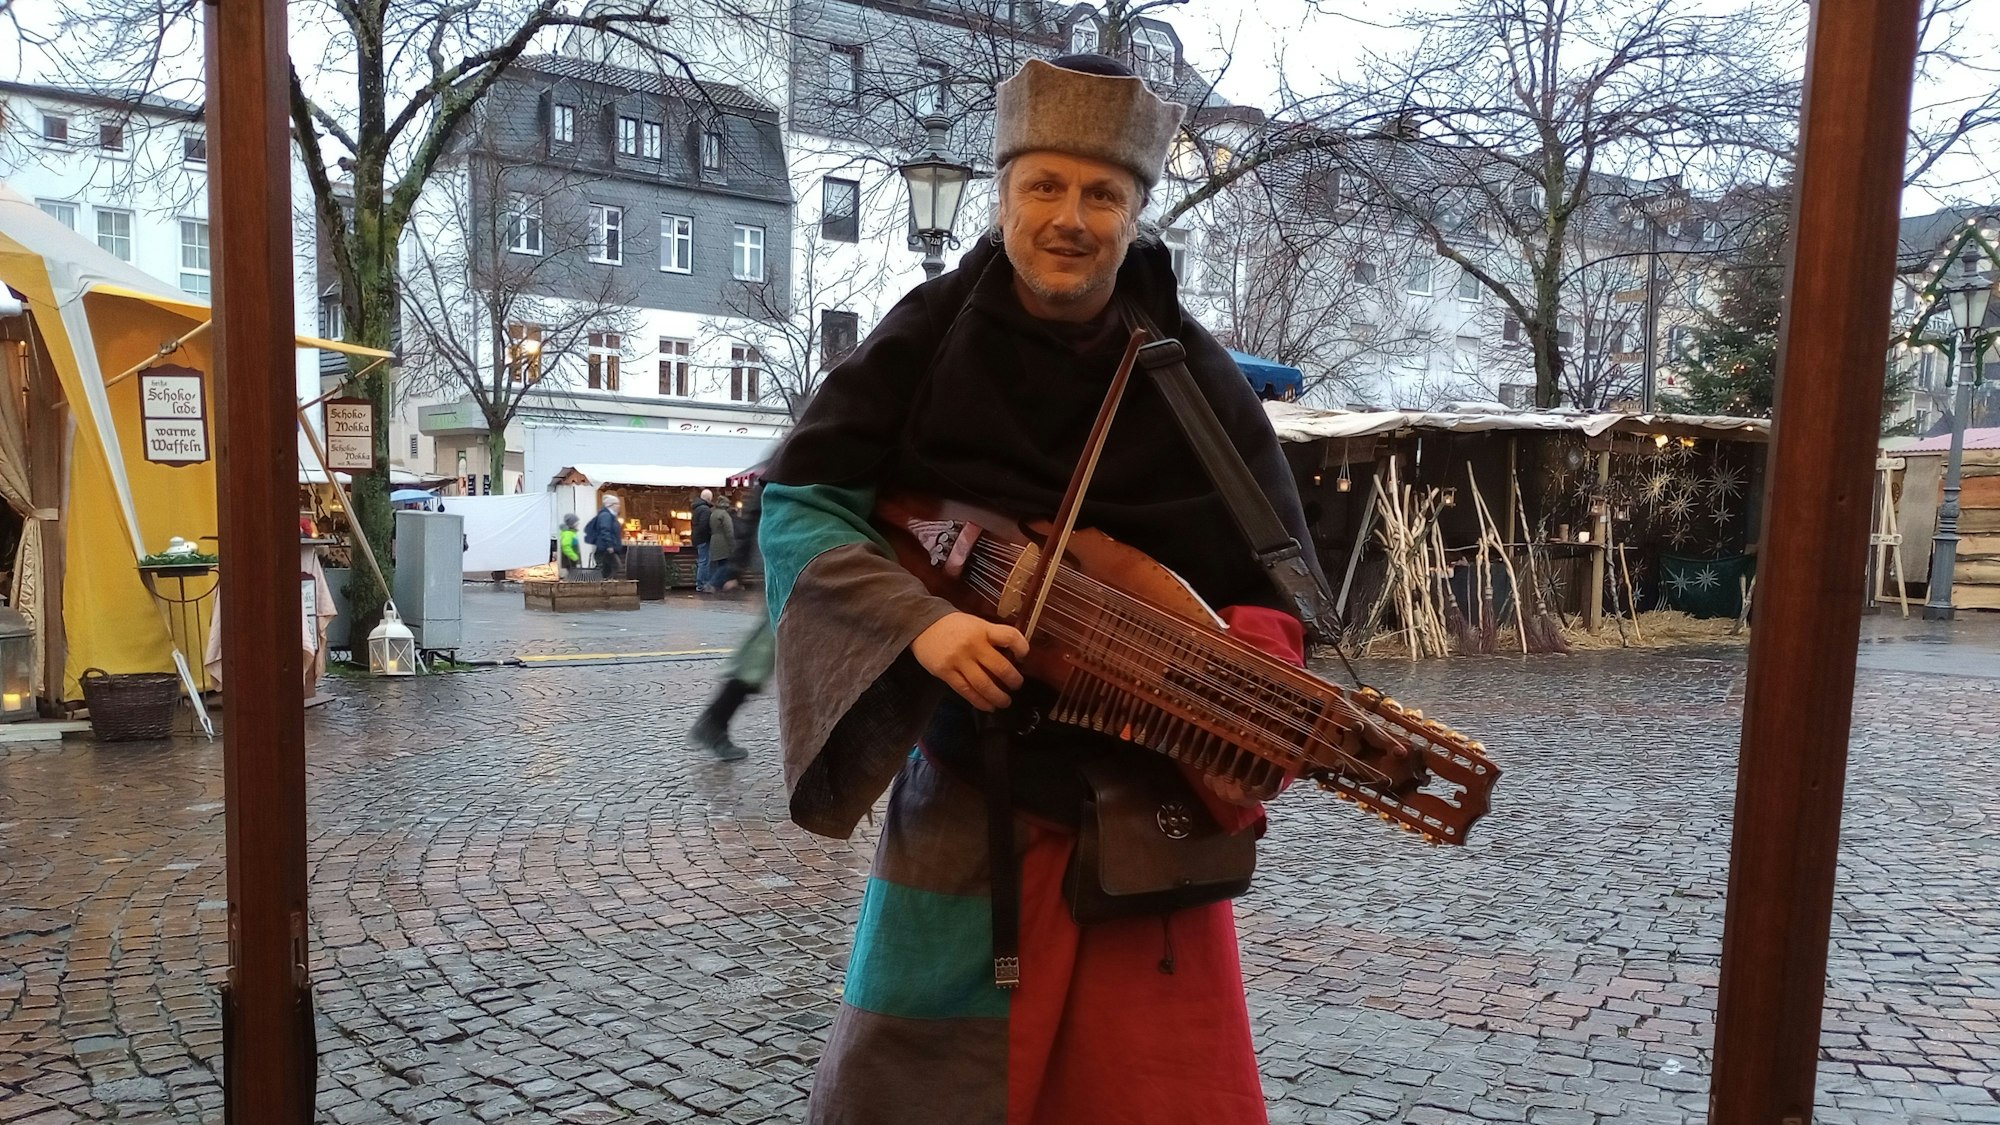 Ein Mann in mittelalterlicher Tracht spielt auf einem Instrument.